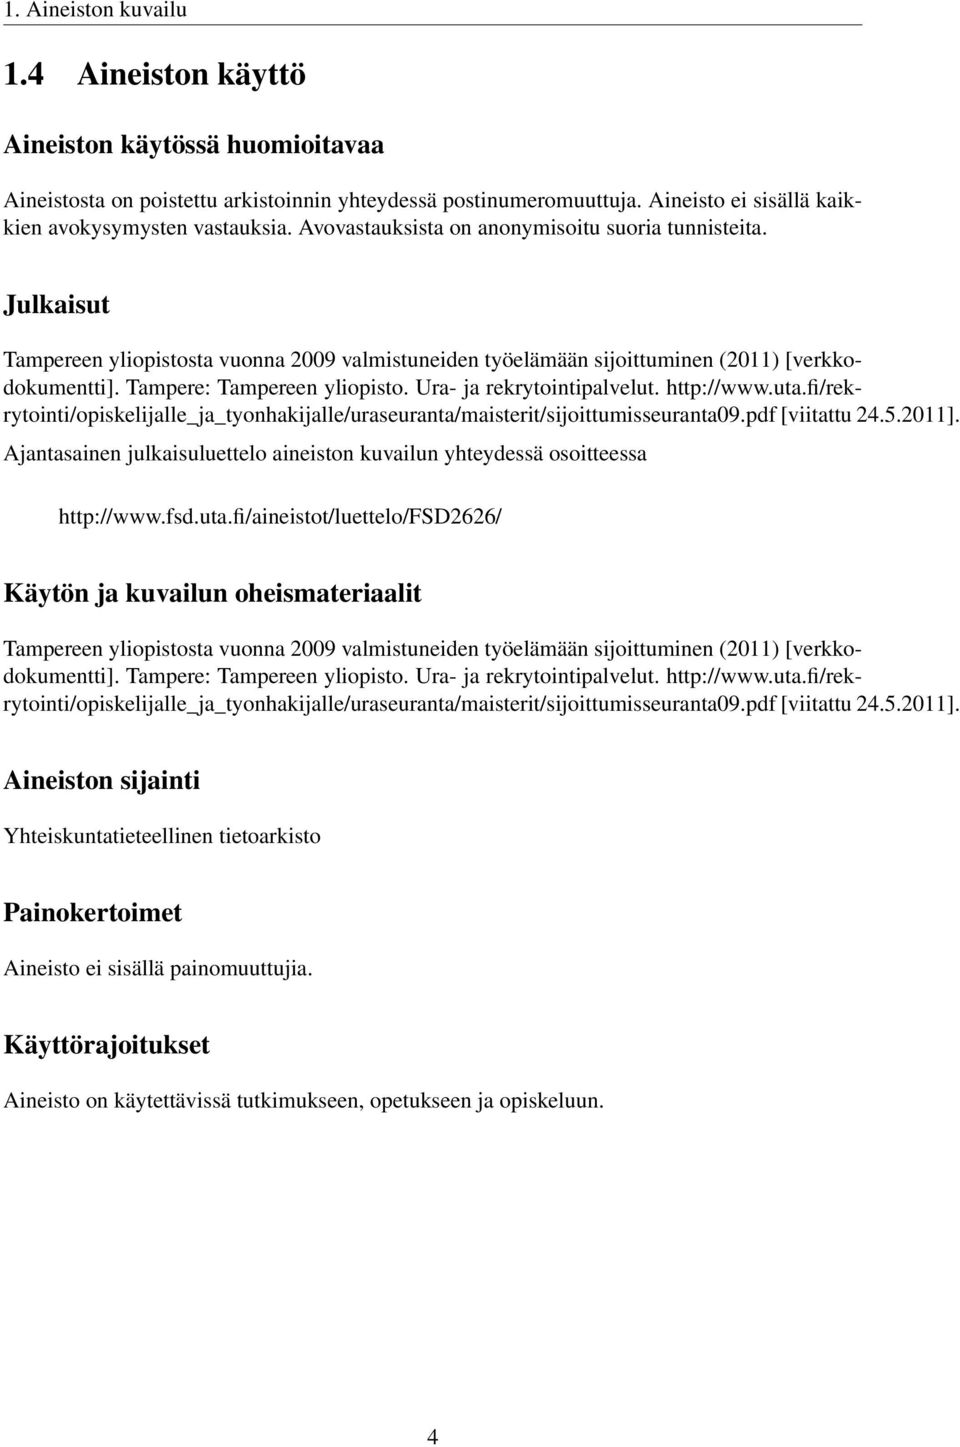 Ura- ja rekrytointipalvelut. http://www.uta.fi/rekrytointi/opiskelijalle_ja_tyonhakijalle/uraseuranta/maisterit/sijoittumisseuranta09.pdf [viitattu 24.5.2011].